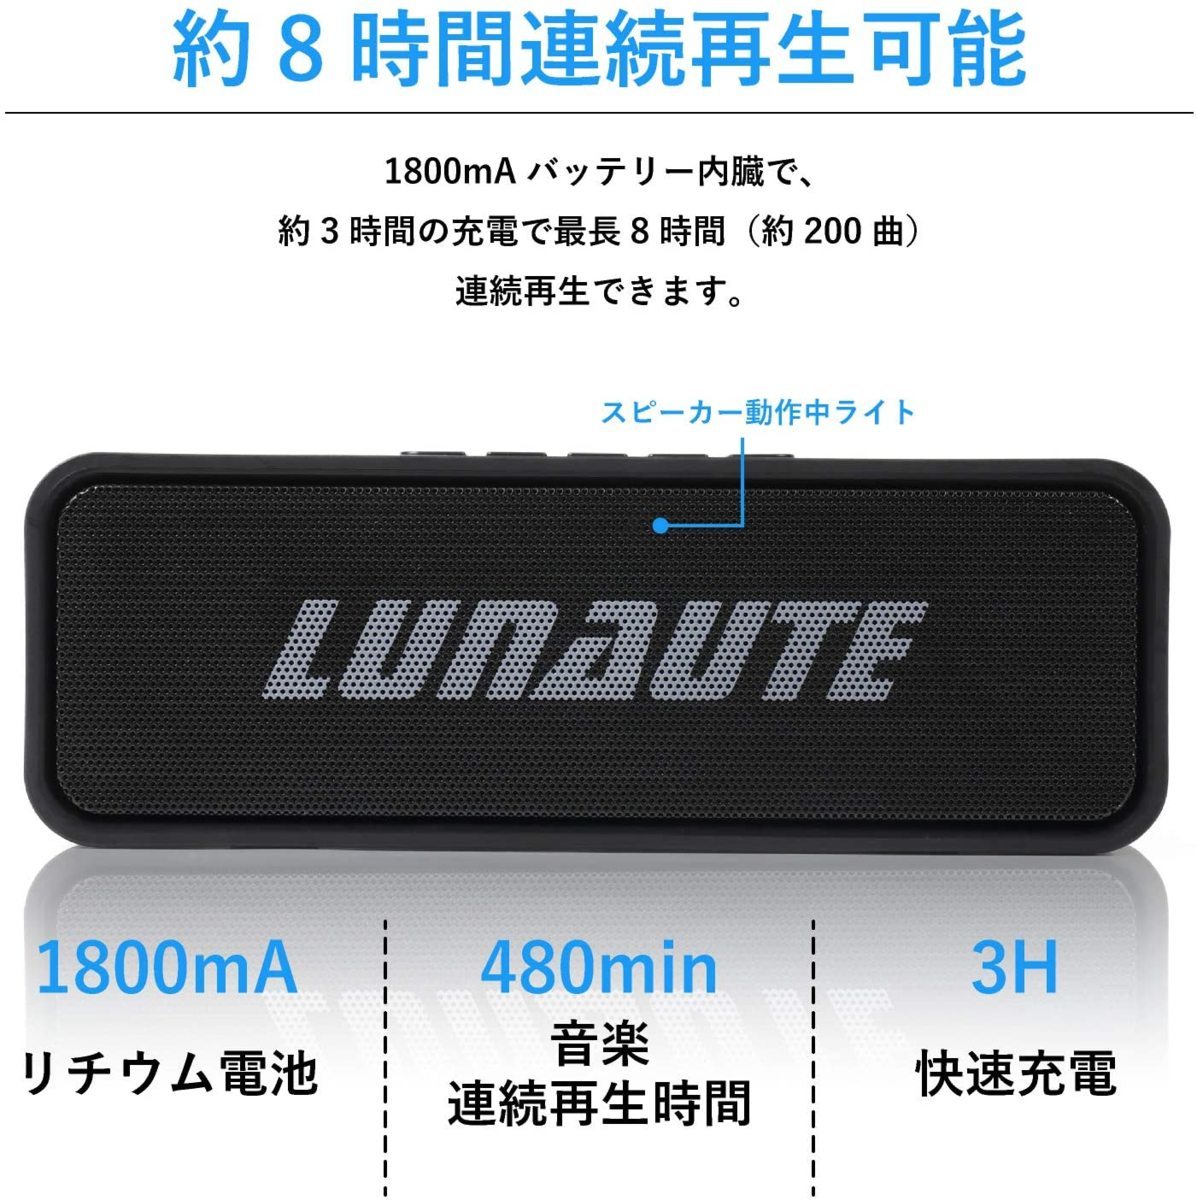 新品 送料無料 LUNA UTE スピーカー Bluetooth ブルートゥース ワイヤレス 軽量 初心者向け ポータブル 内蔵マイク  ハンズフリー会話 至高